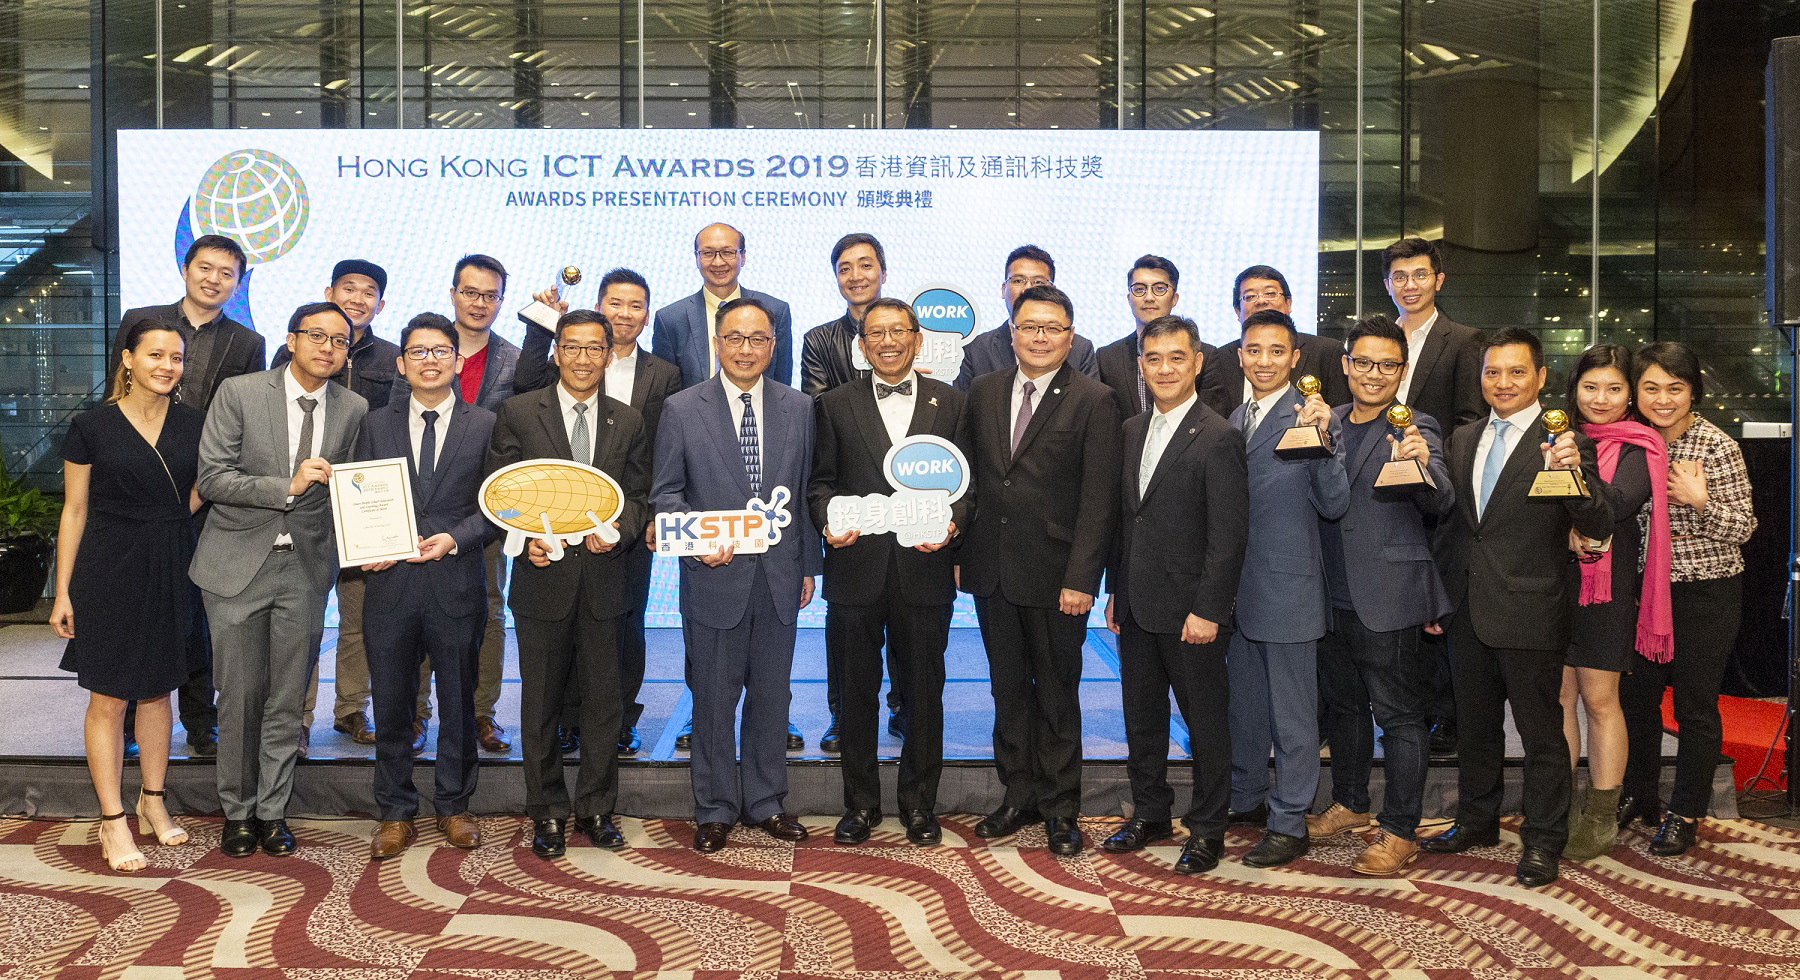 出席嘉賓與得獎的香港科技園公司培育公司及合作夥伴公司合照，慶祝他們在2019香港資訊及通訊科技獎頒獎典禮上獲得多個獎項。（香港科技園圖片）